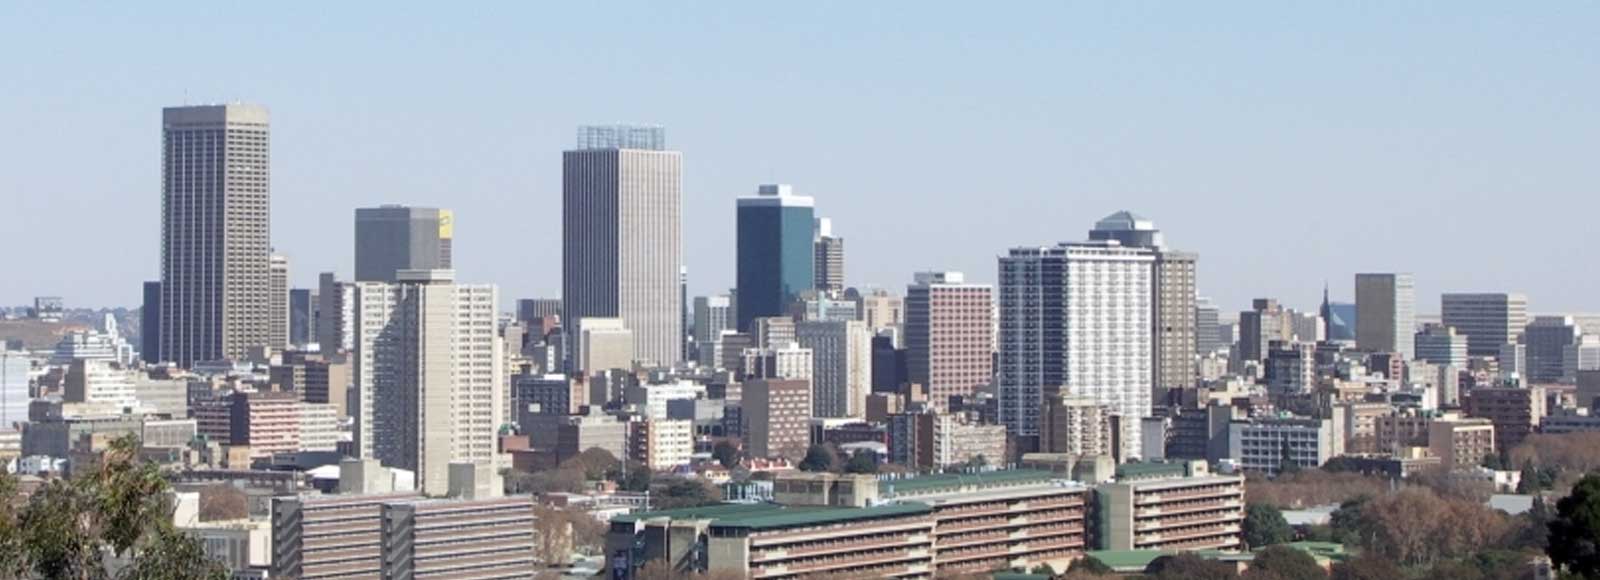 Ofertas de Traslados en Johannesburgo. Traslados económicos en Johannesburgo 